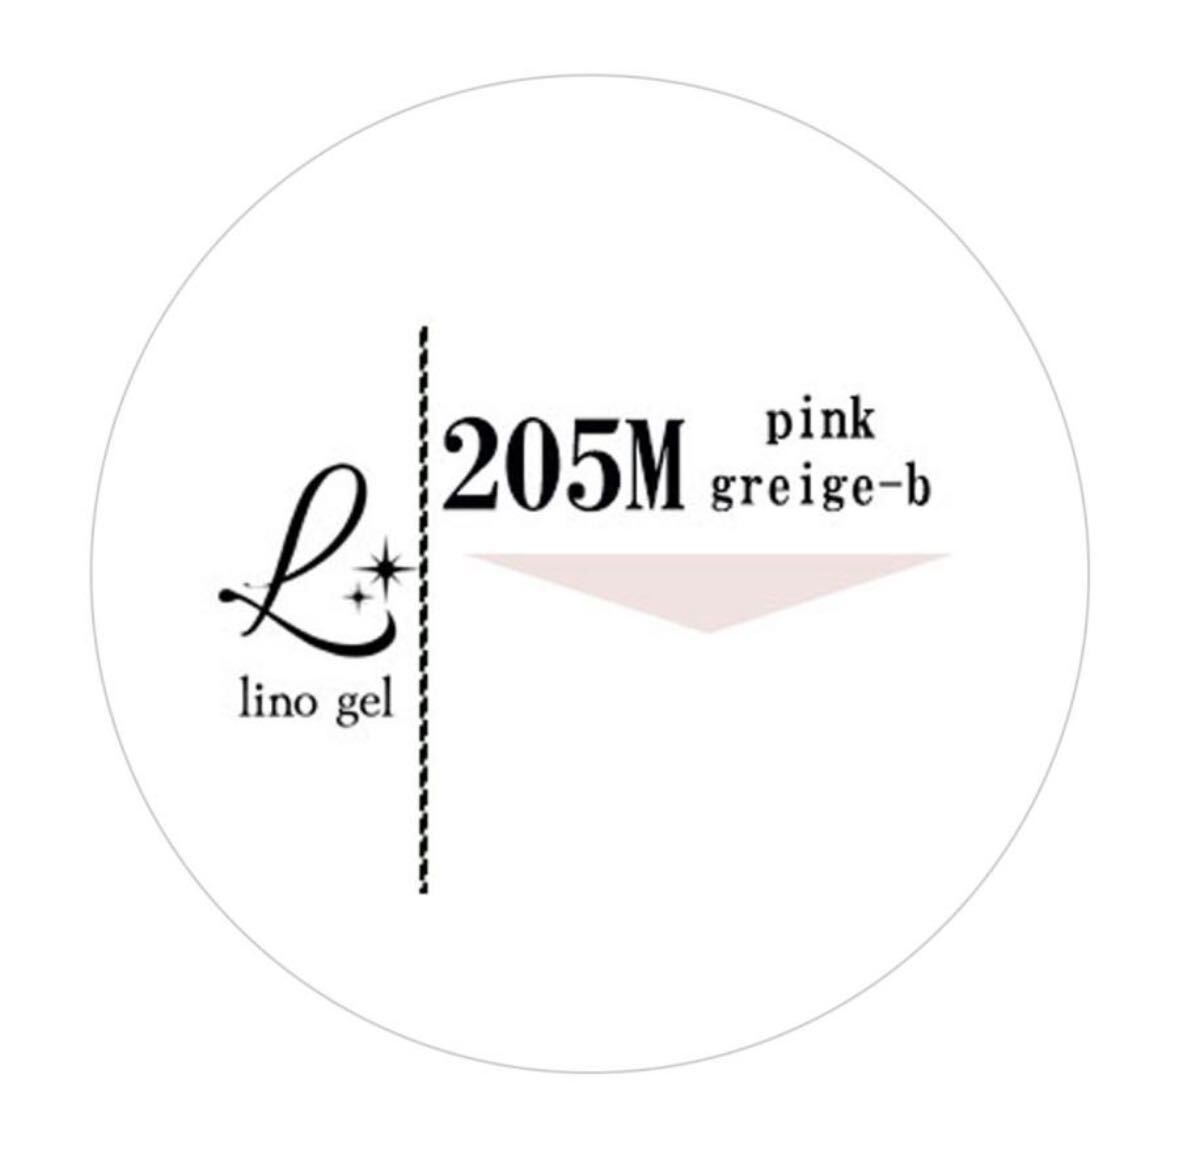 LinoGel リノジェル カラージェル 5g LED/UVライト対応 205M ピンクグレージュ ビー pink greige-b プロフェショナル ジェルネイル カラー